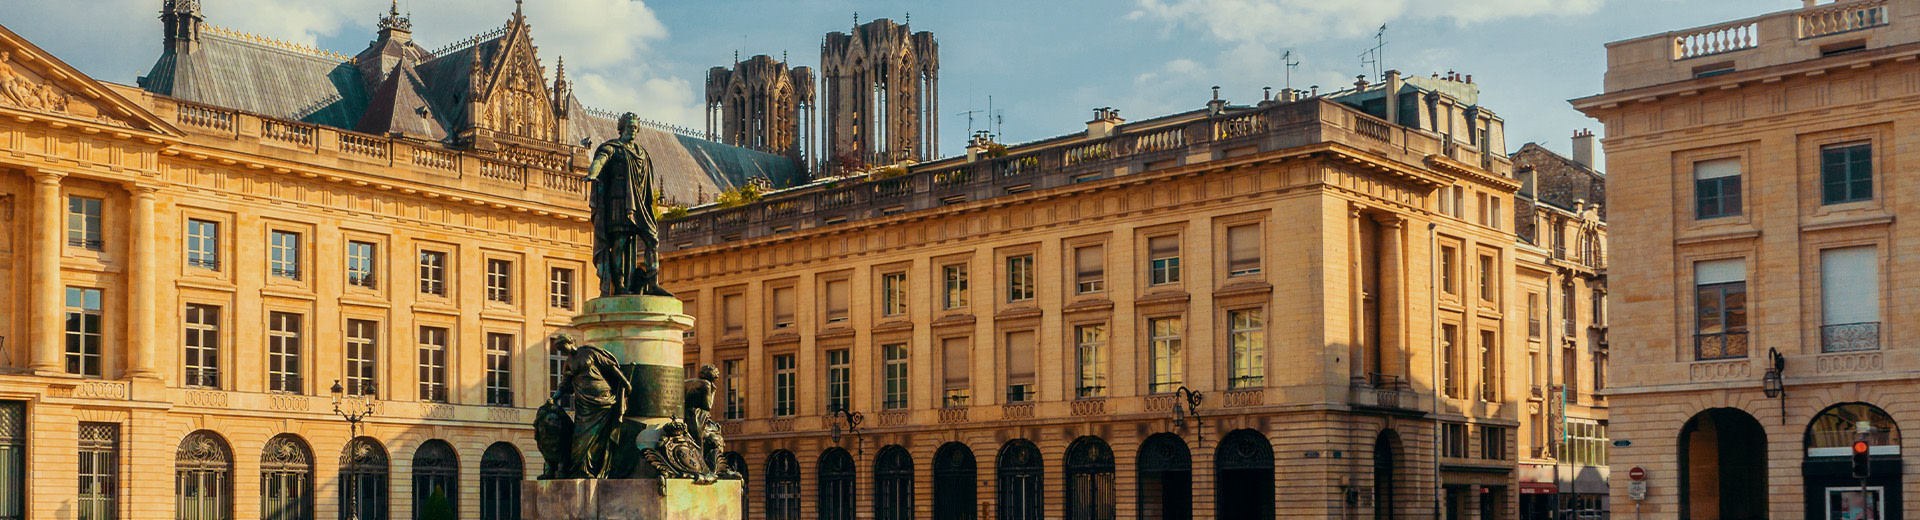 Une photo de Place Royale, un carré à Reims. Au premier plan se trouve une statue en bronze de Louis XV. Les tours jumelles de Cathédrale Notre-Dame sont visibles au-dessus des bâtiments en arrière-plan.